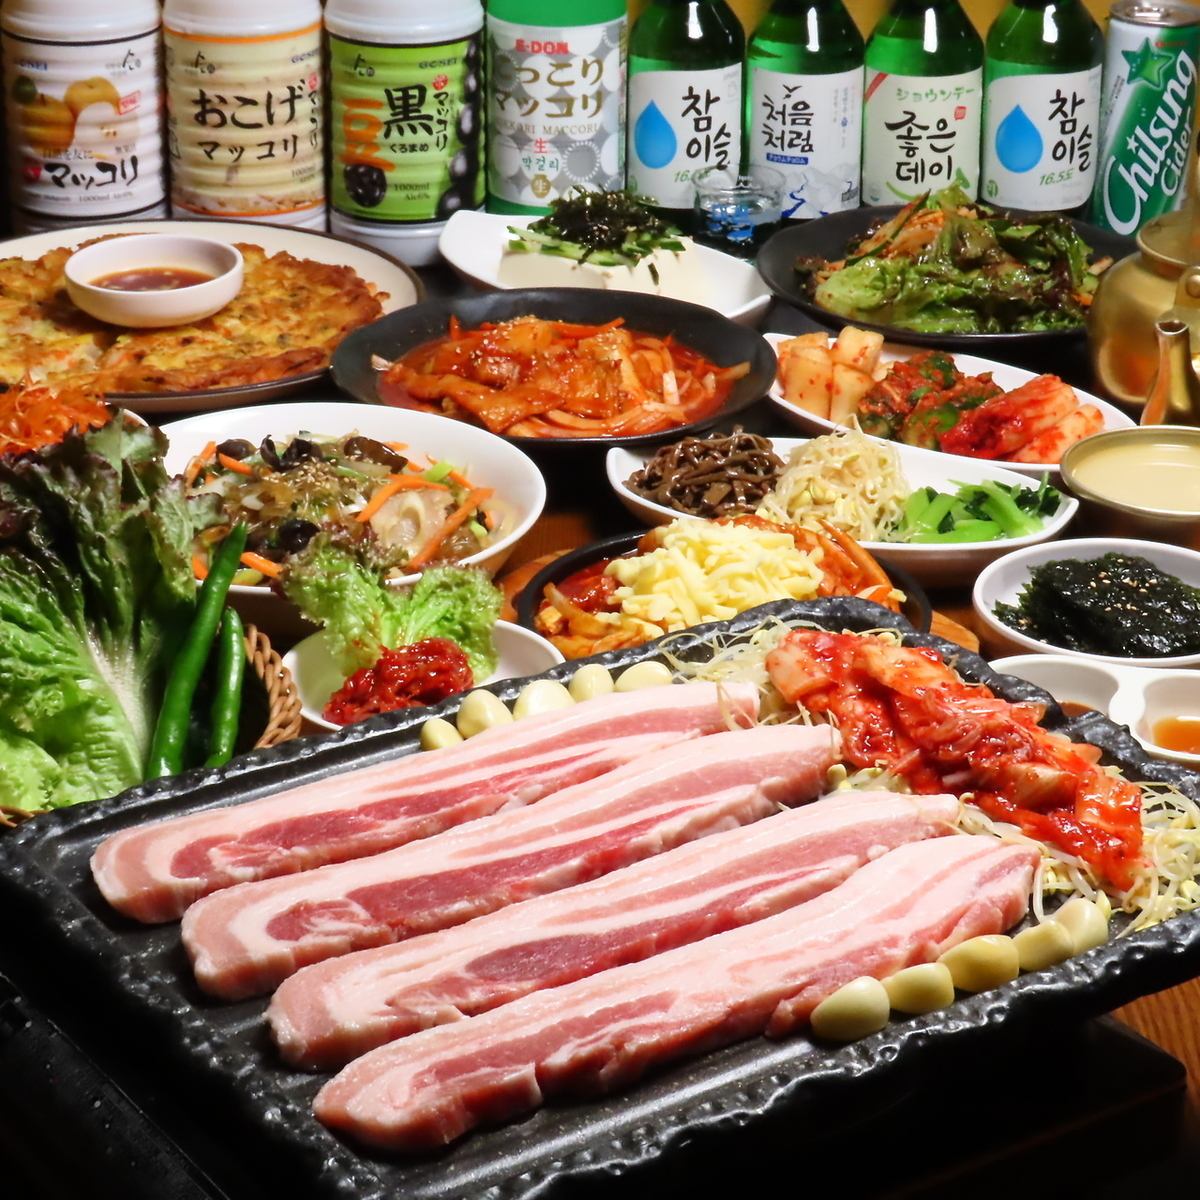 我們的餐廳提供許多韓國菜餚，包括五花肉。